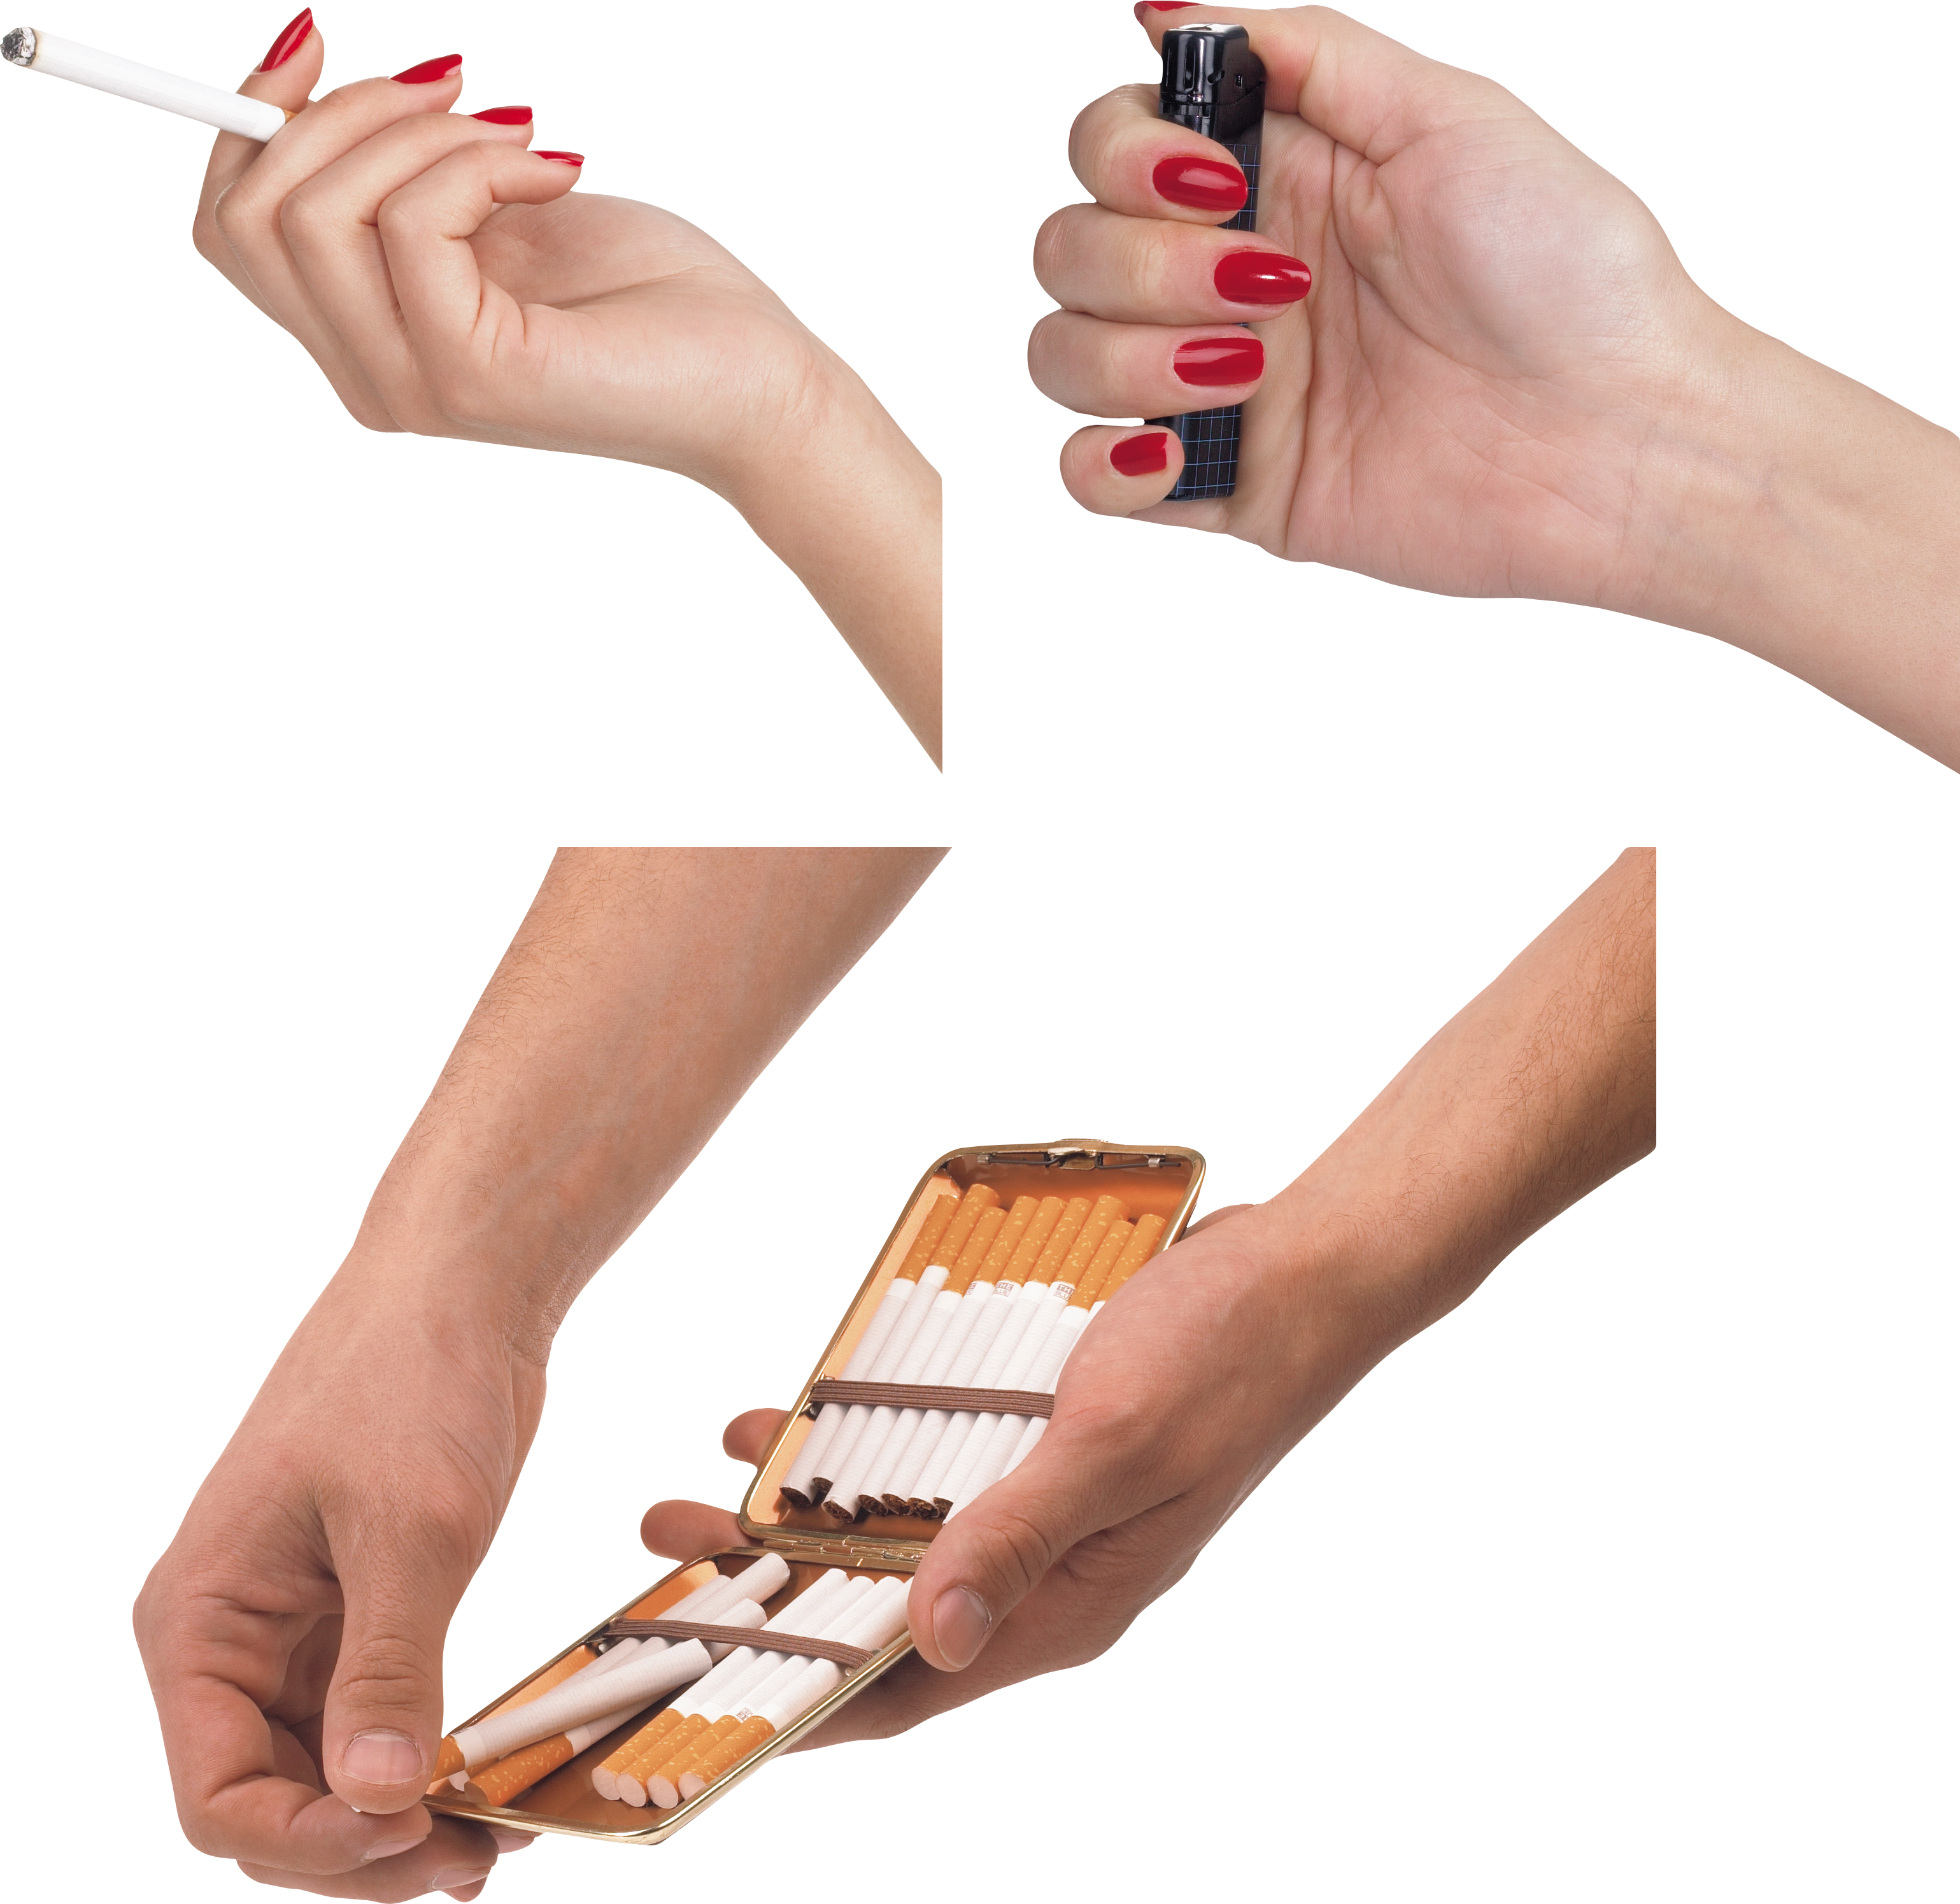 हाथ में सिगरेट